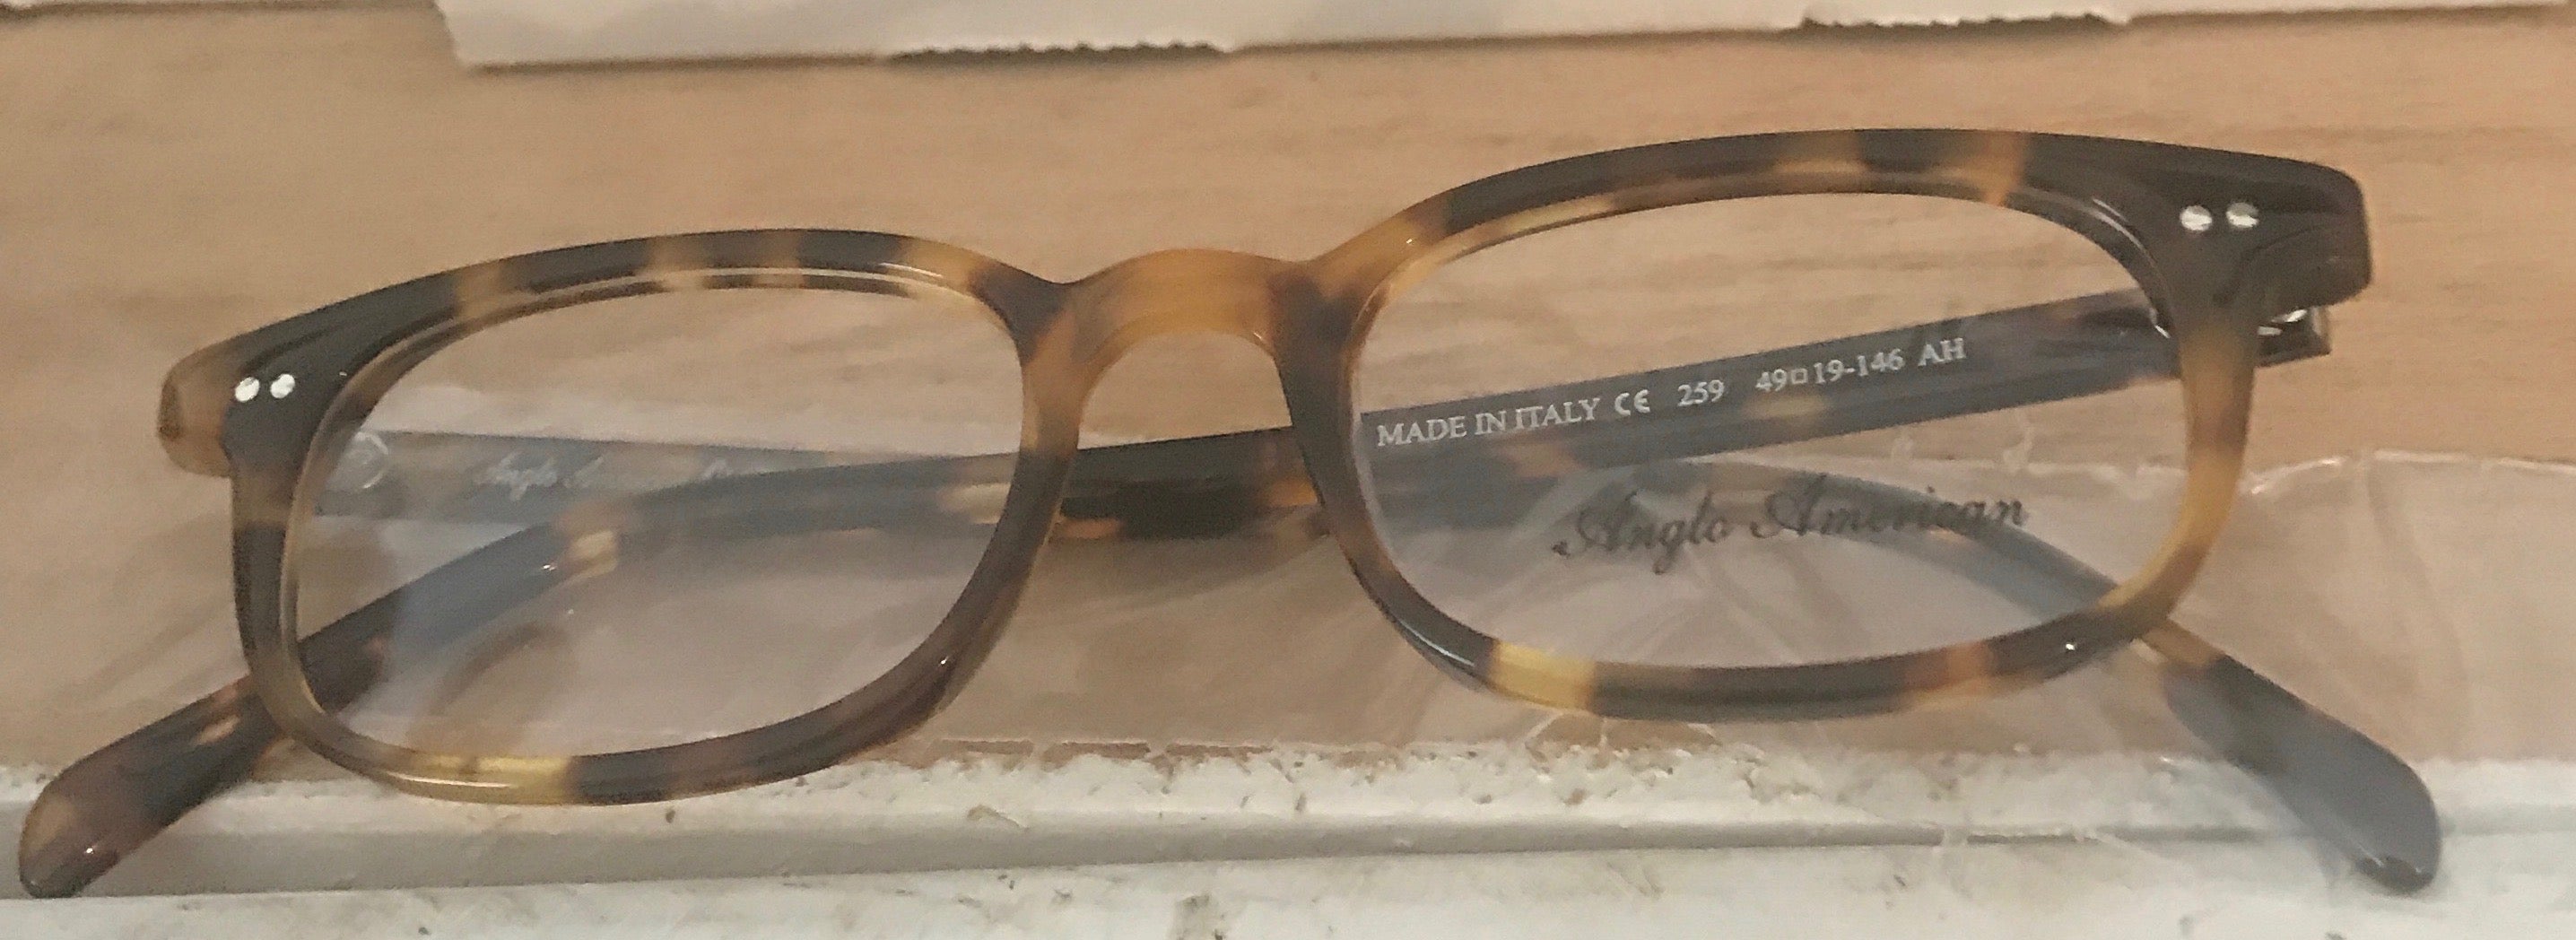 Anglo American British 259 Eyeglass Frame